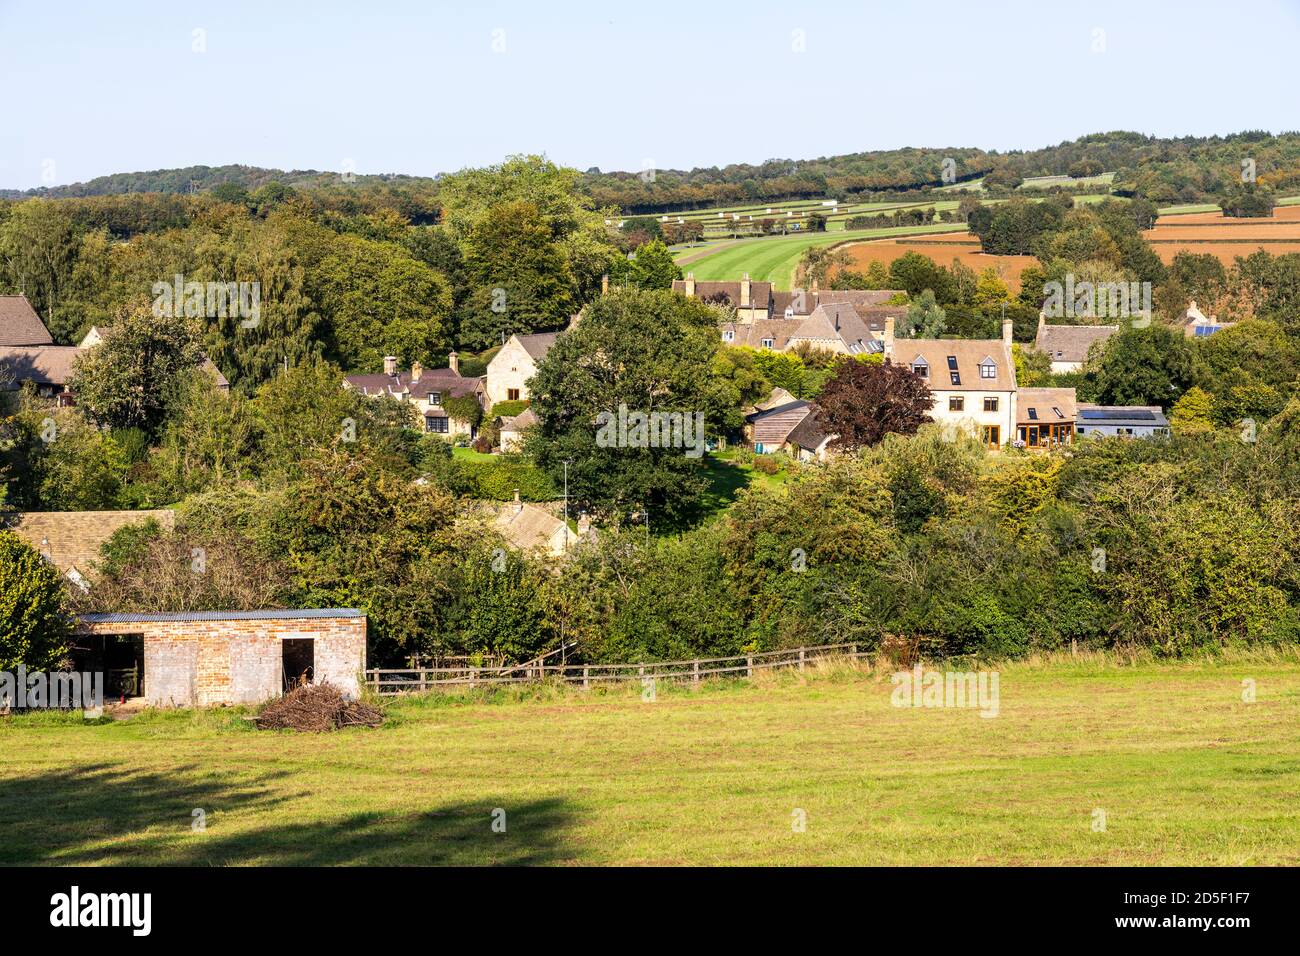 Le village de Cotswold de Ford, Gloucestershire UK - dans un quartier célèbre pour ses écuries de course et abrite le château Jackdaws de Jonjo O’Neill Banque D'Images